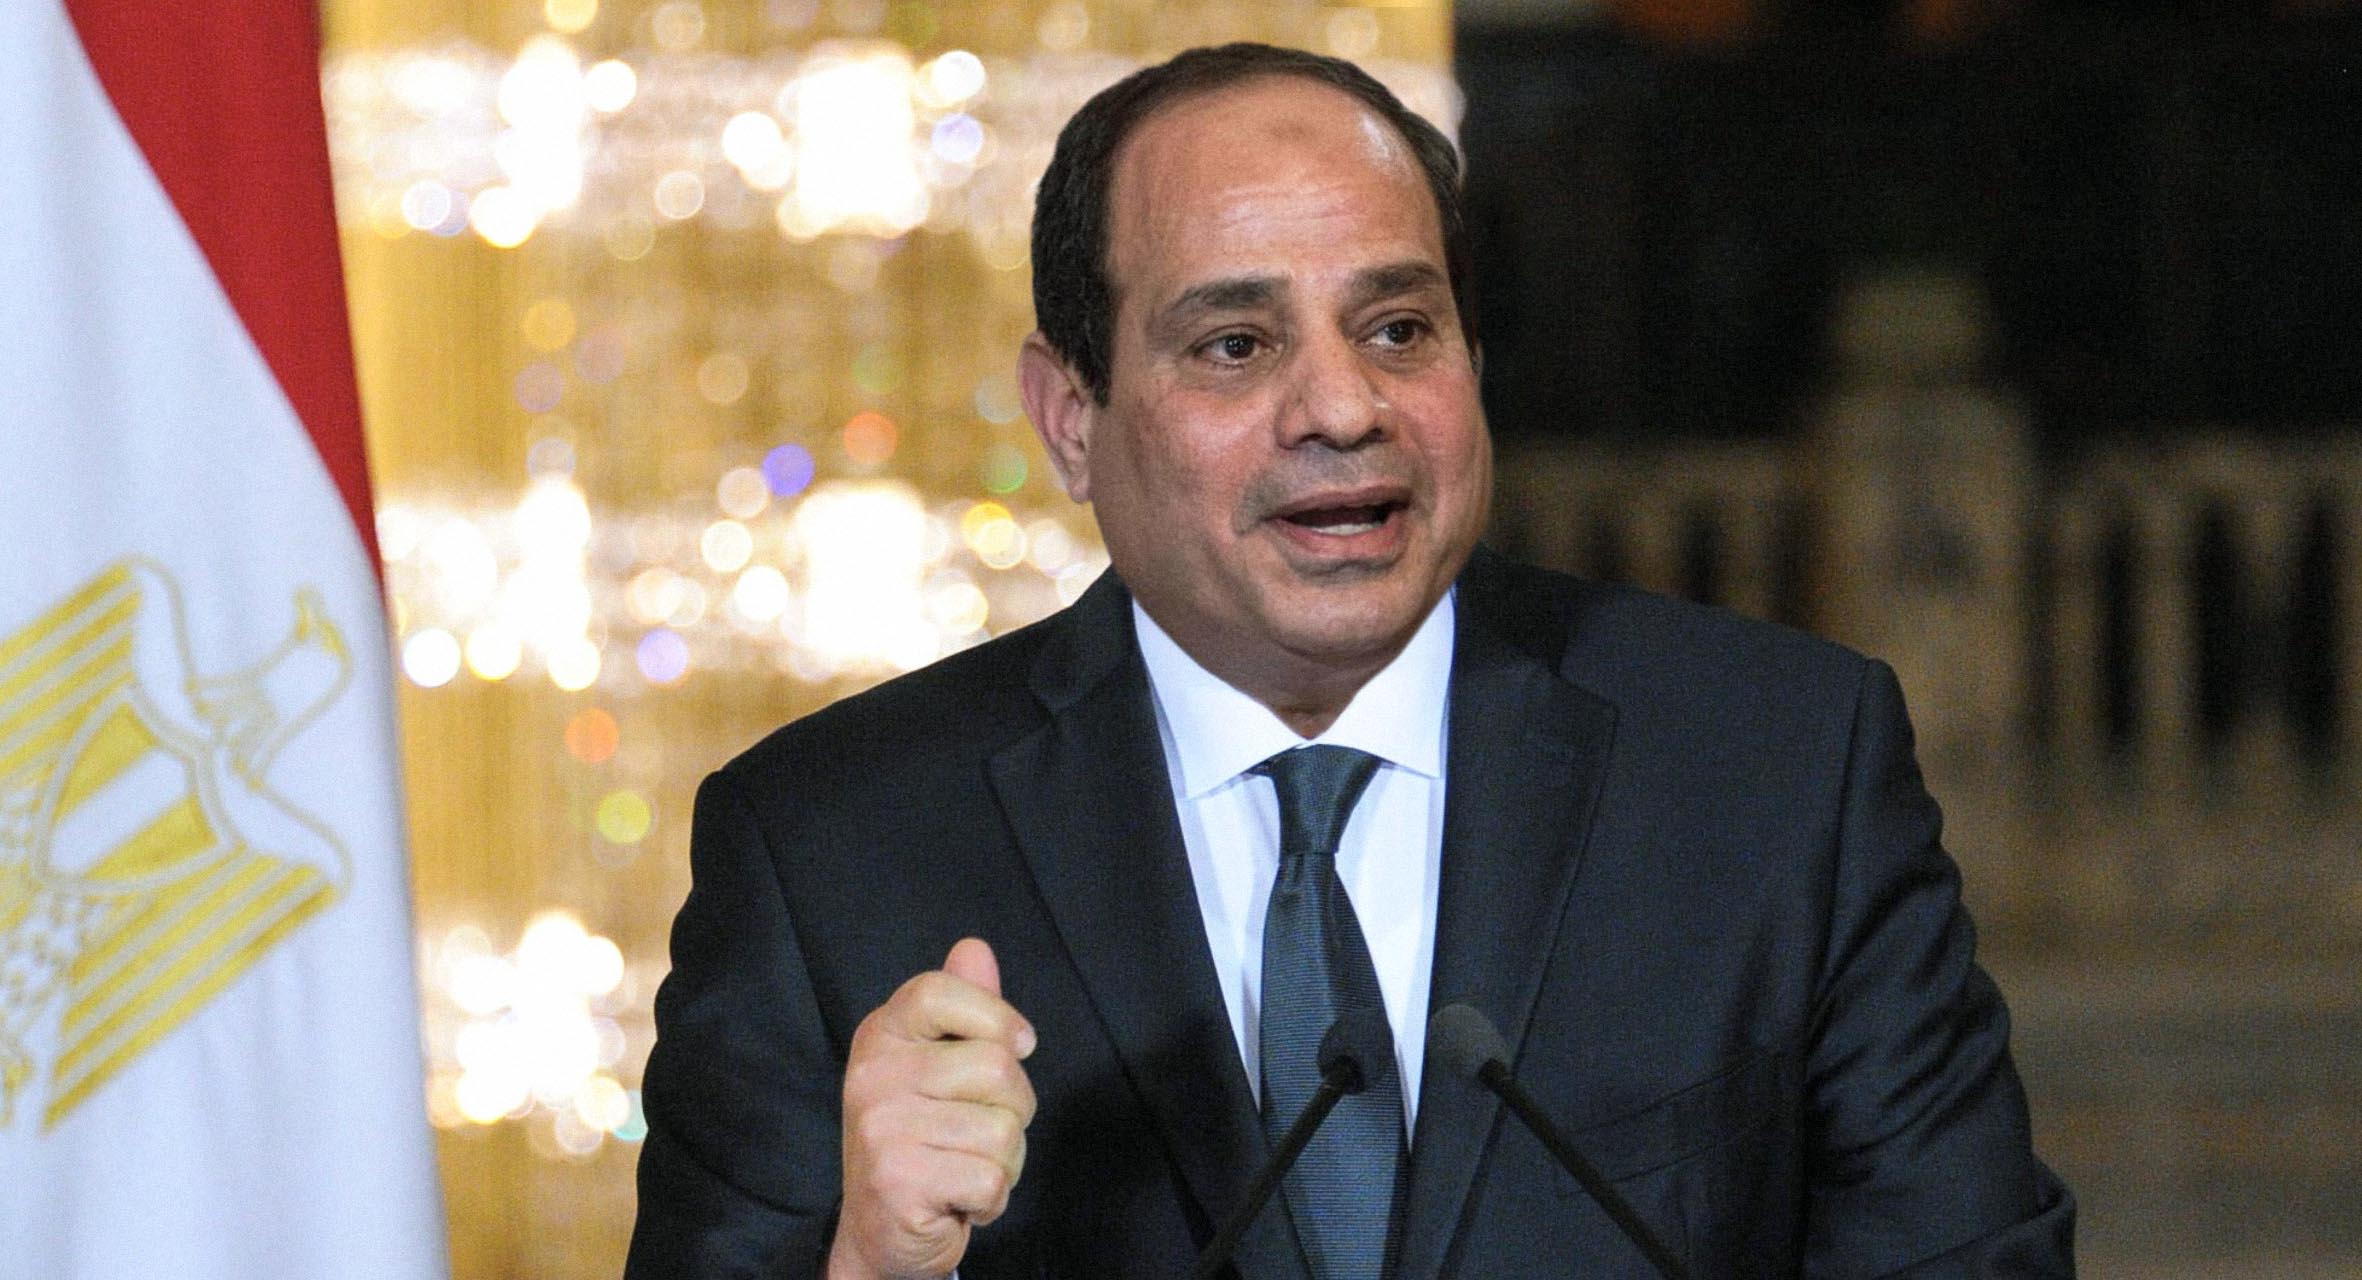 صورة السيسي يُطمئن المصريين أنّ الوضع الوبائي ممتاز لدرجة إمكانية الاستثمار فيه مادياً